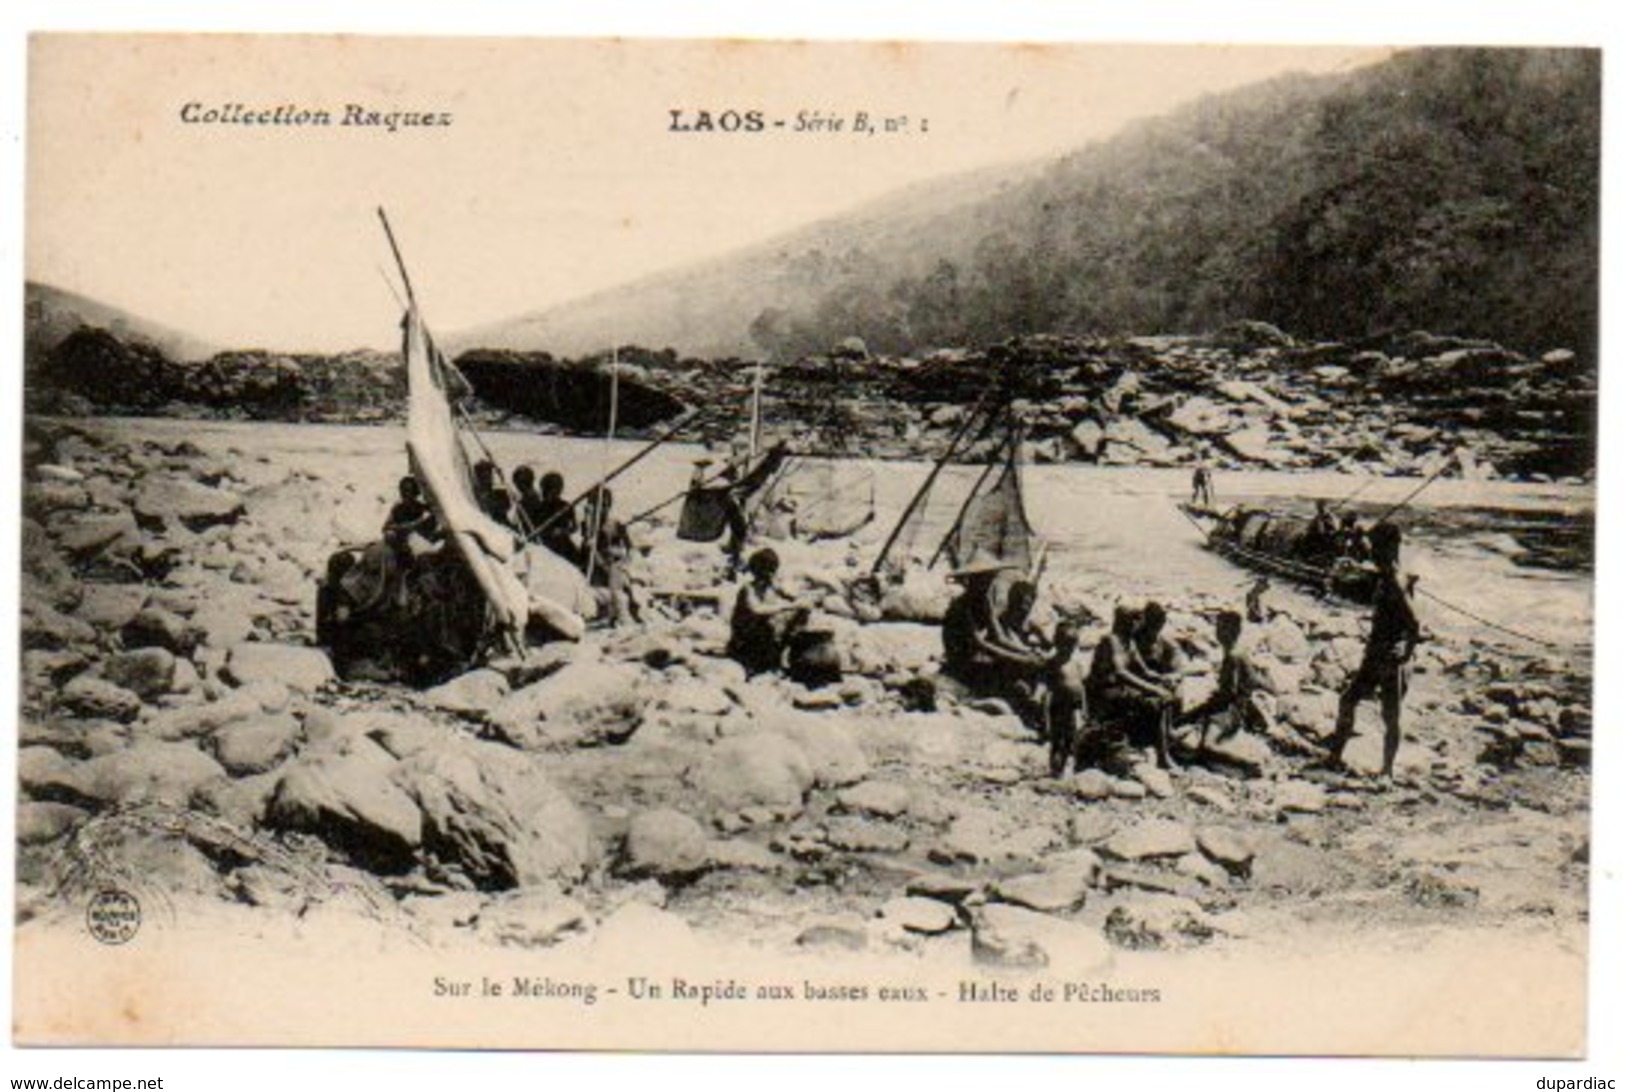 Asie / LAOS : Sur Le Mékong - Un Rapide Aux Basses Eaux - Halte De Pêcheurs. (Collection Raquez Série B, N° 1). - Laos